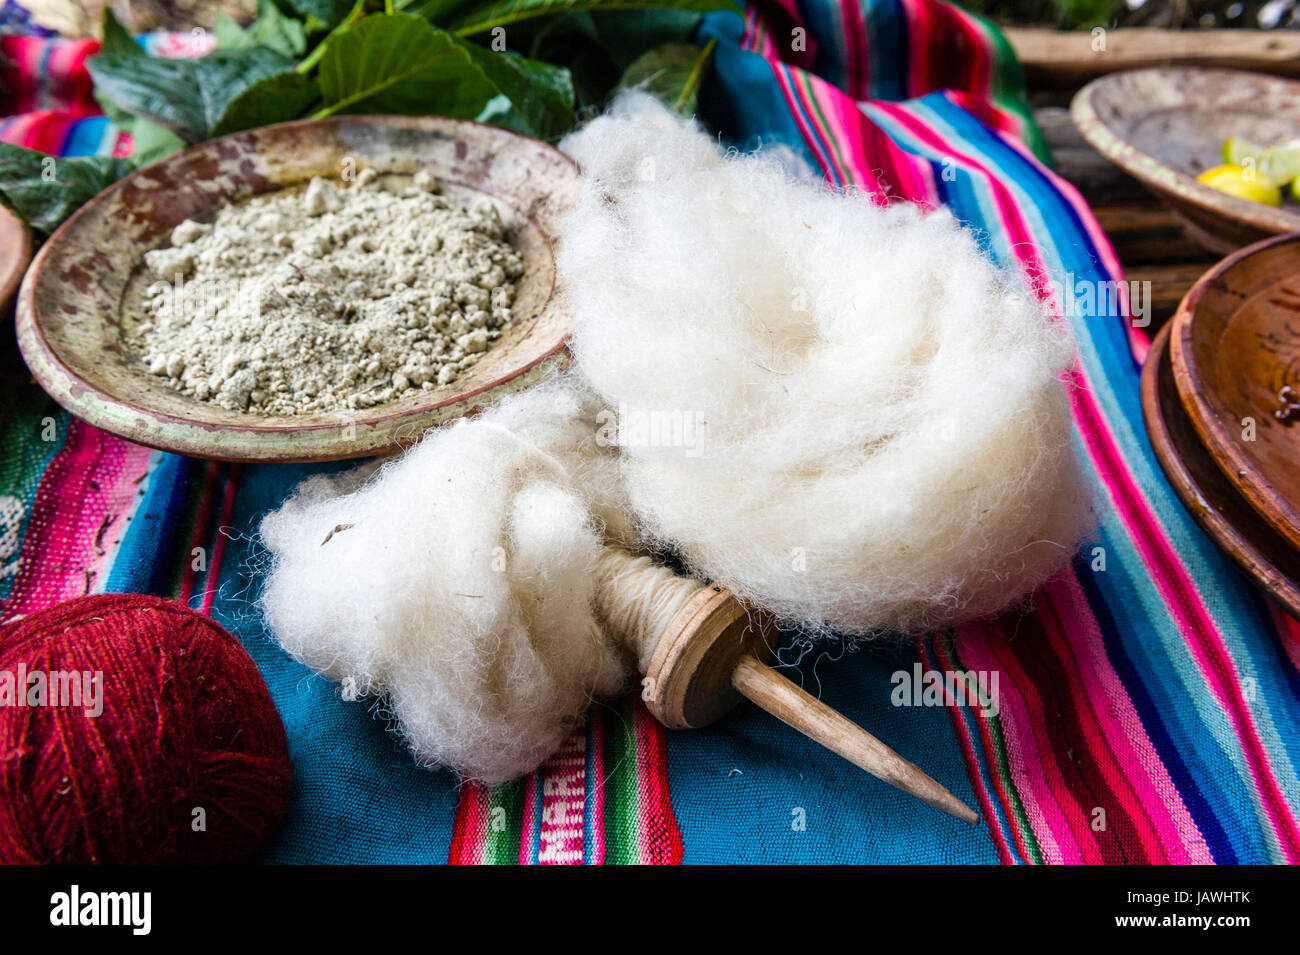 Amaru Menschen mit natürlichen Farbstoffen zu Schafe Wolle zum Spinnen von Garn Farbe. Stockfoto